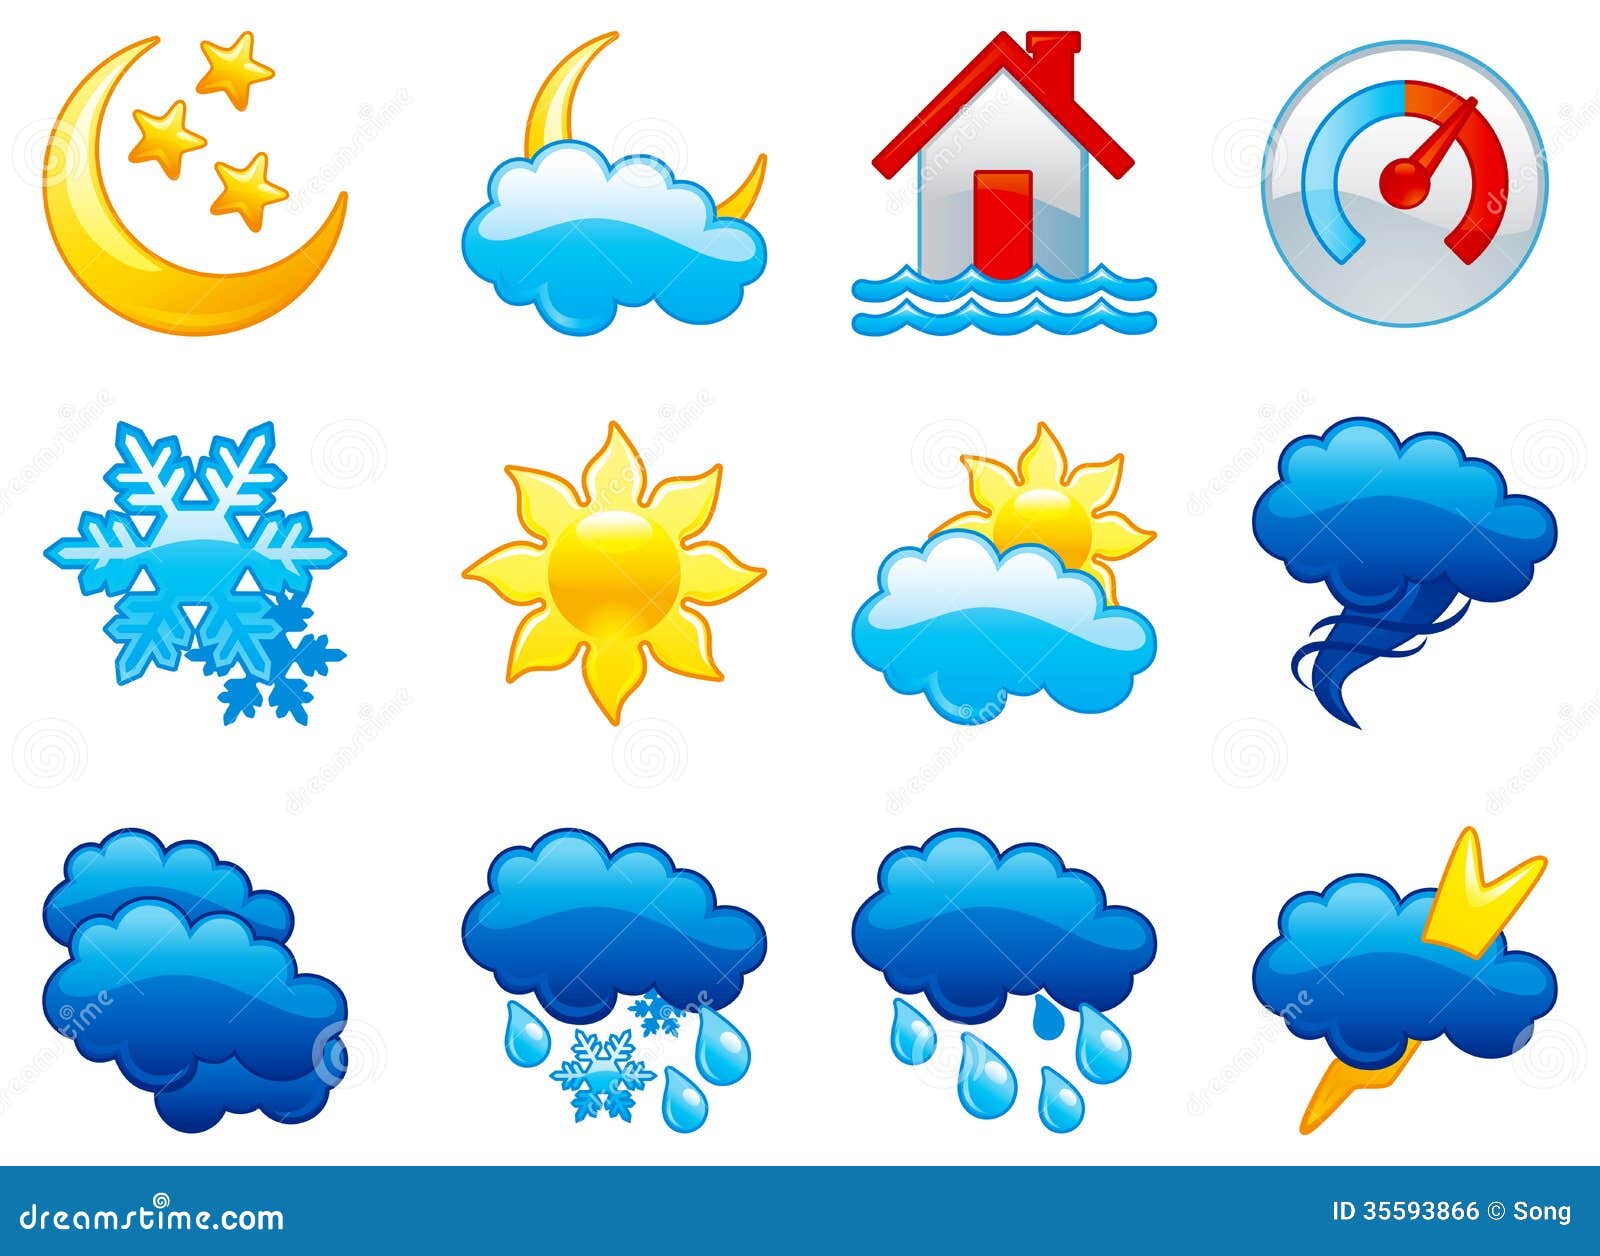 Ясно обозначение погоды. Значки погодных явлений. Символы природных явлений. Пиктограммы погодных явлений. Погодные знаки для детей.